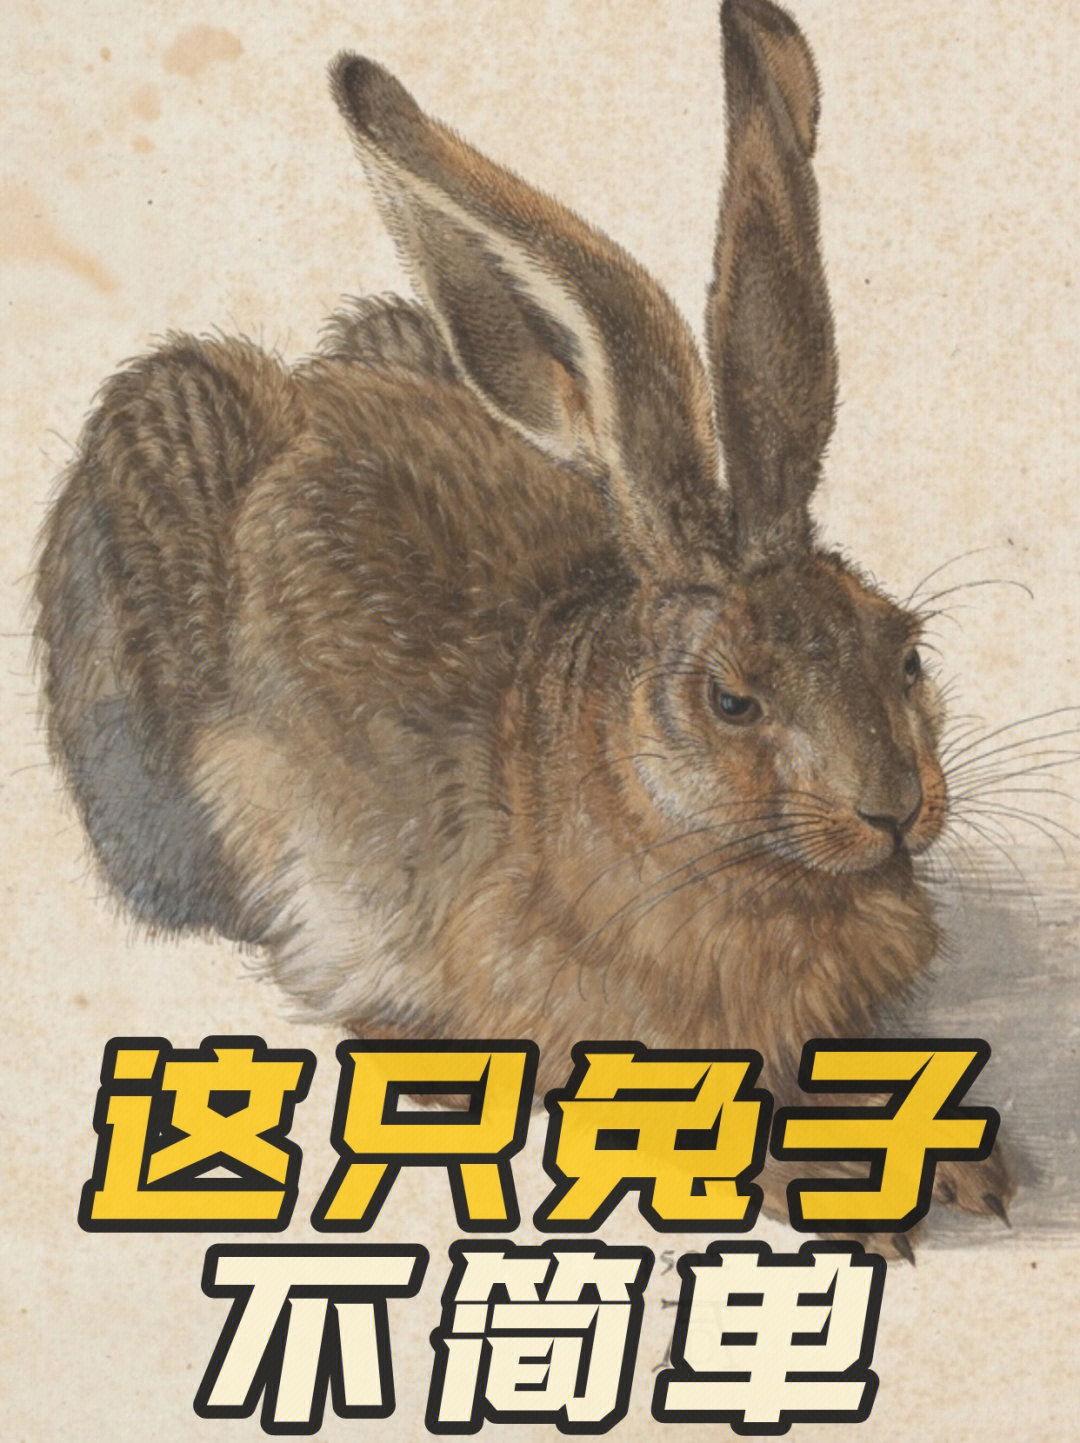 十只兔子歌词原版图片